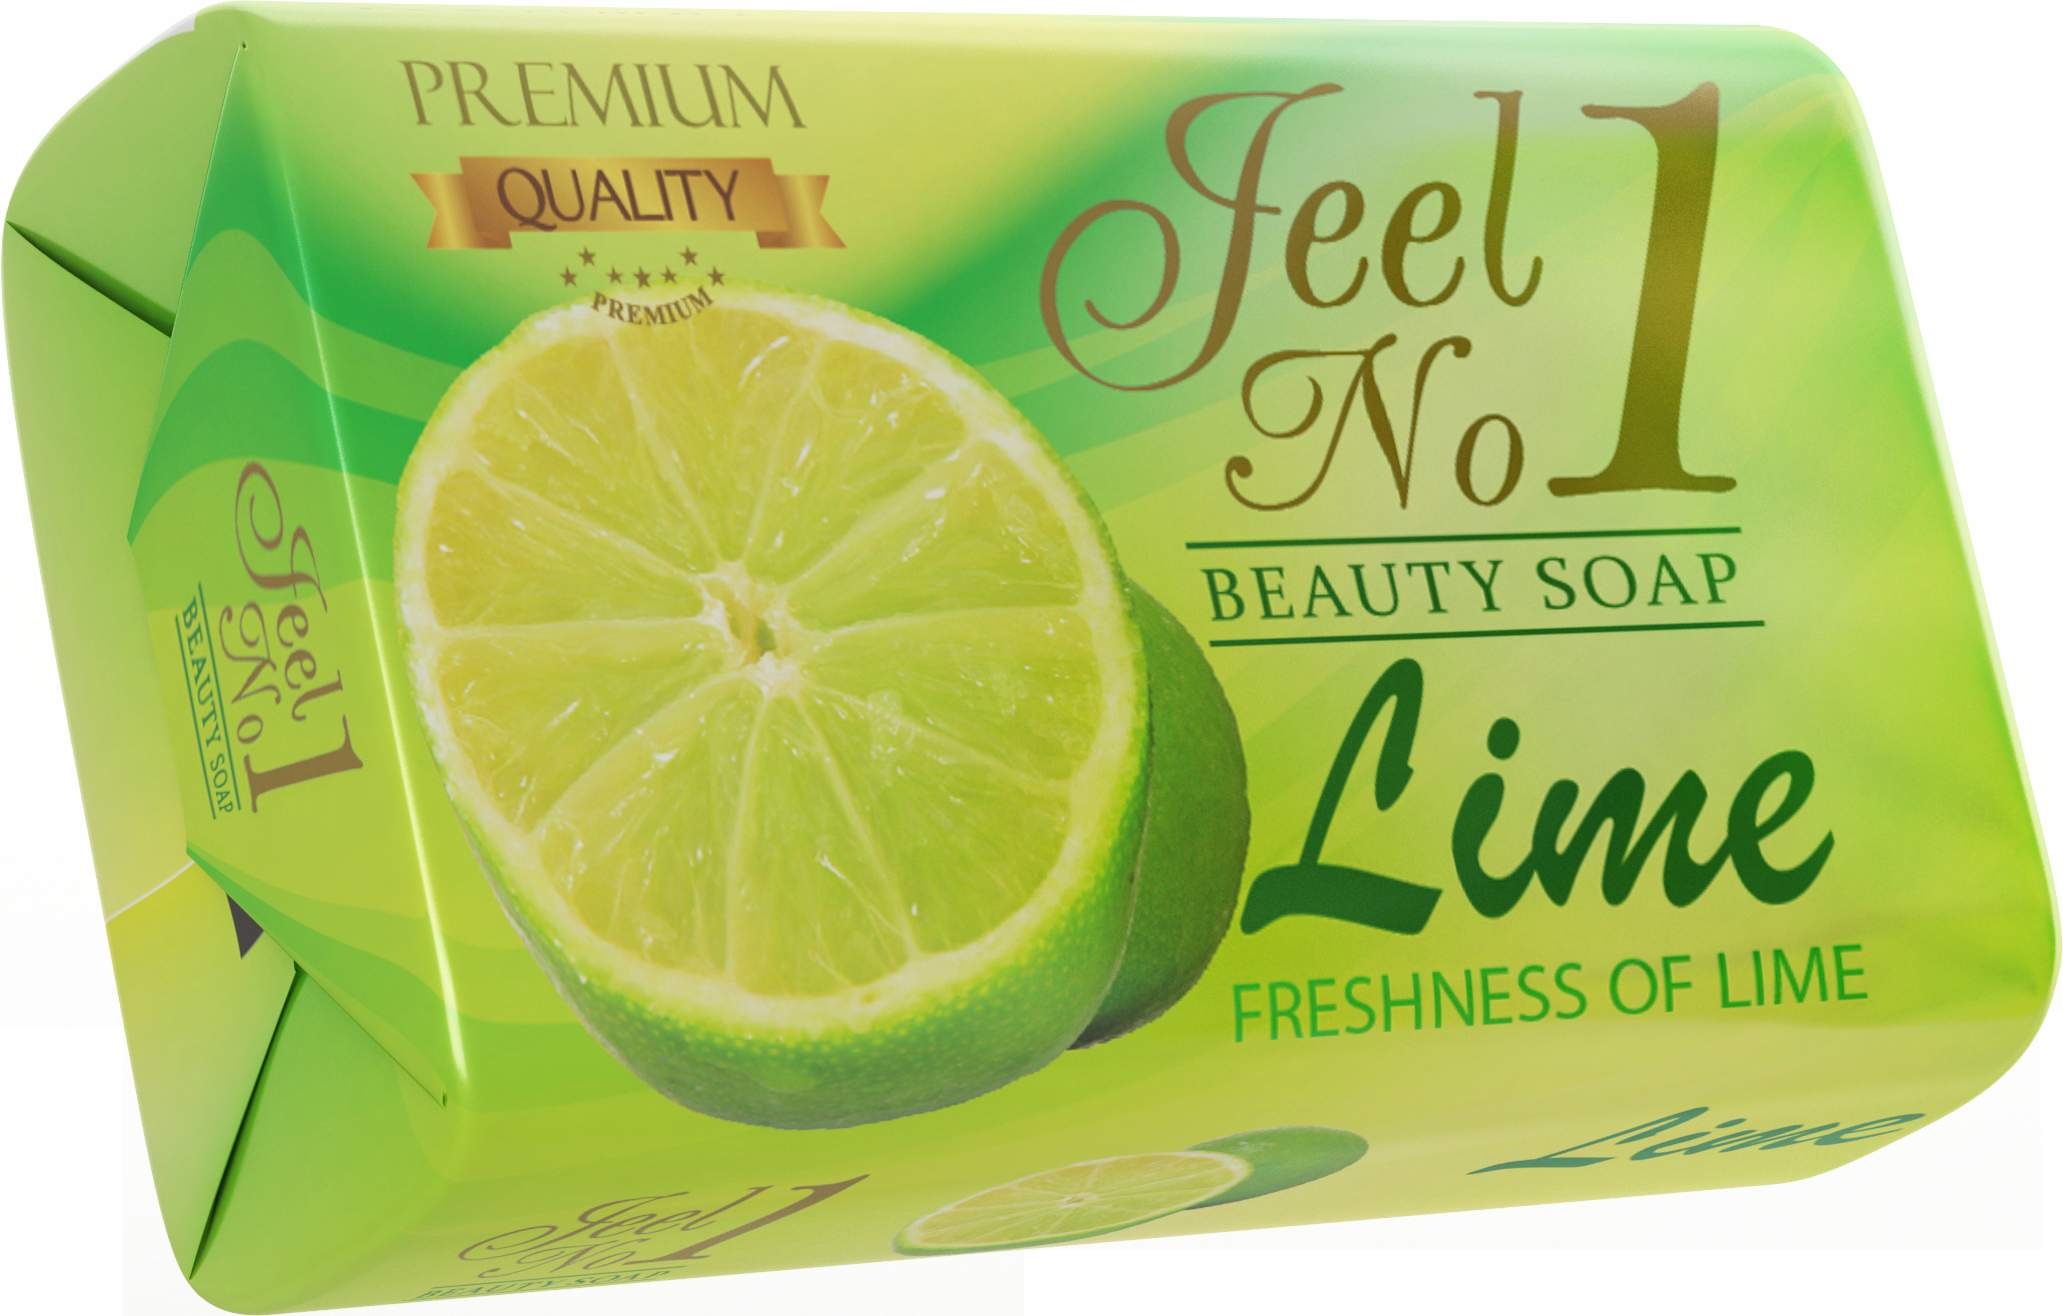 Jeel N0.1 Lime Beauty Soap